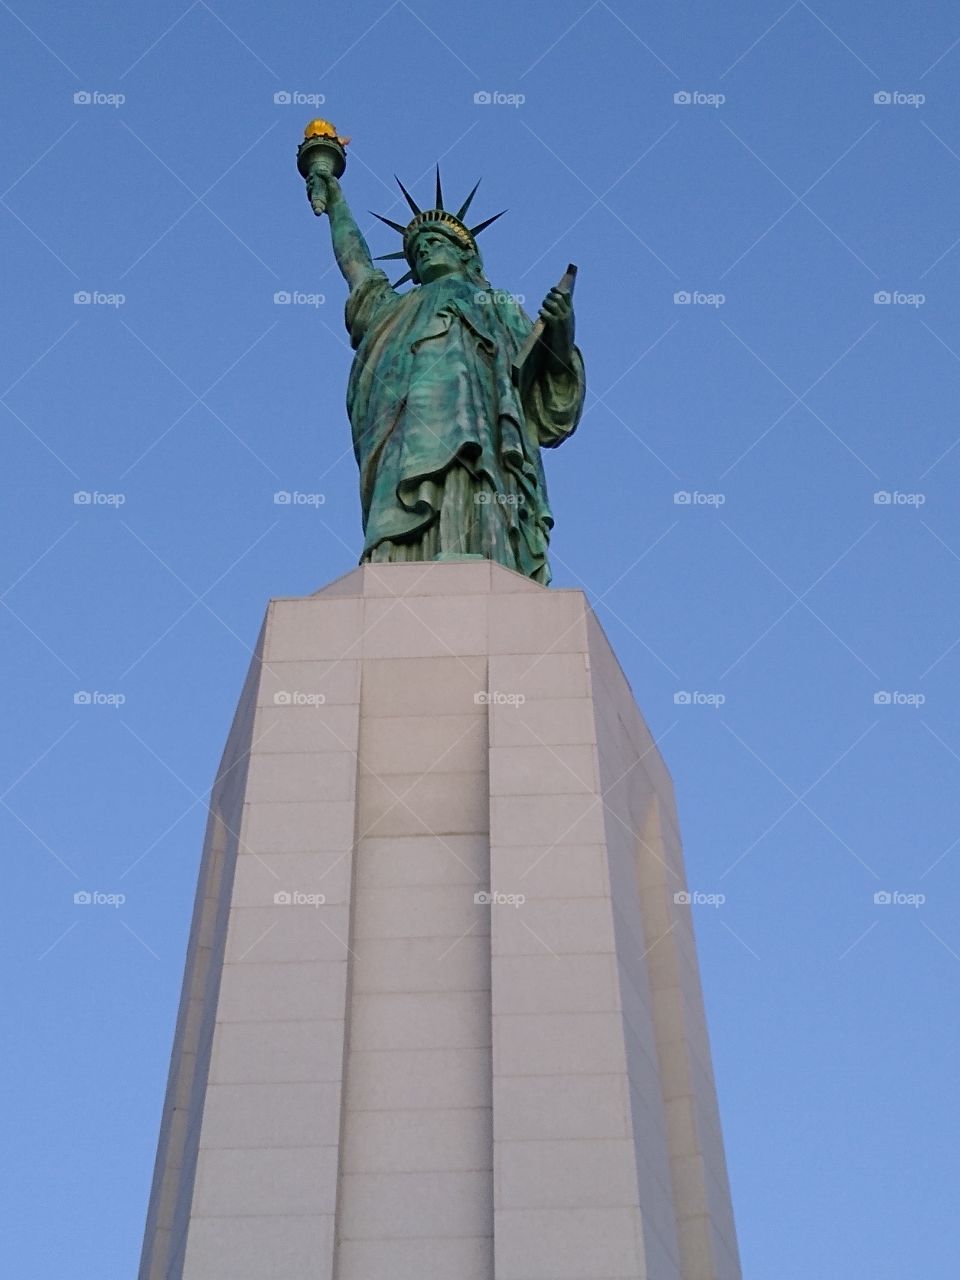 statue of liberty, Birmingham, al